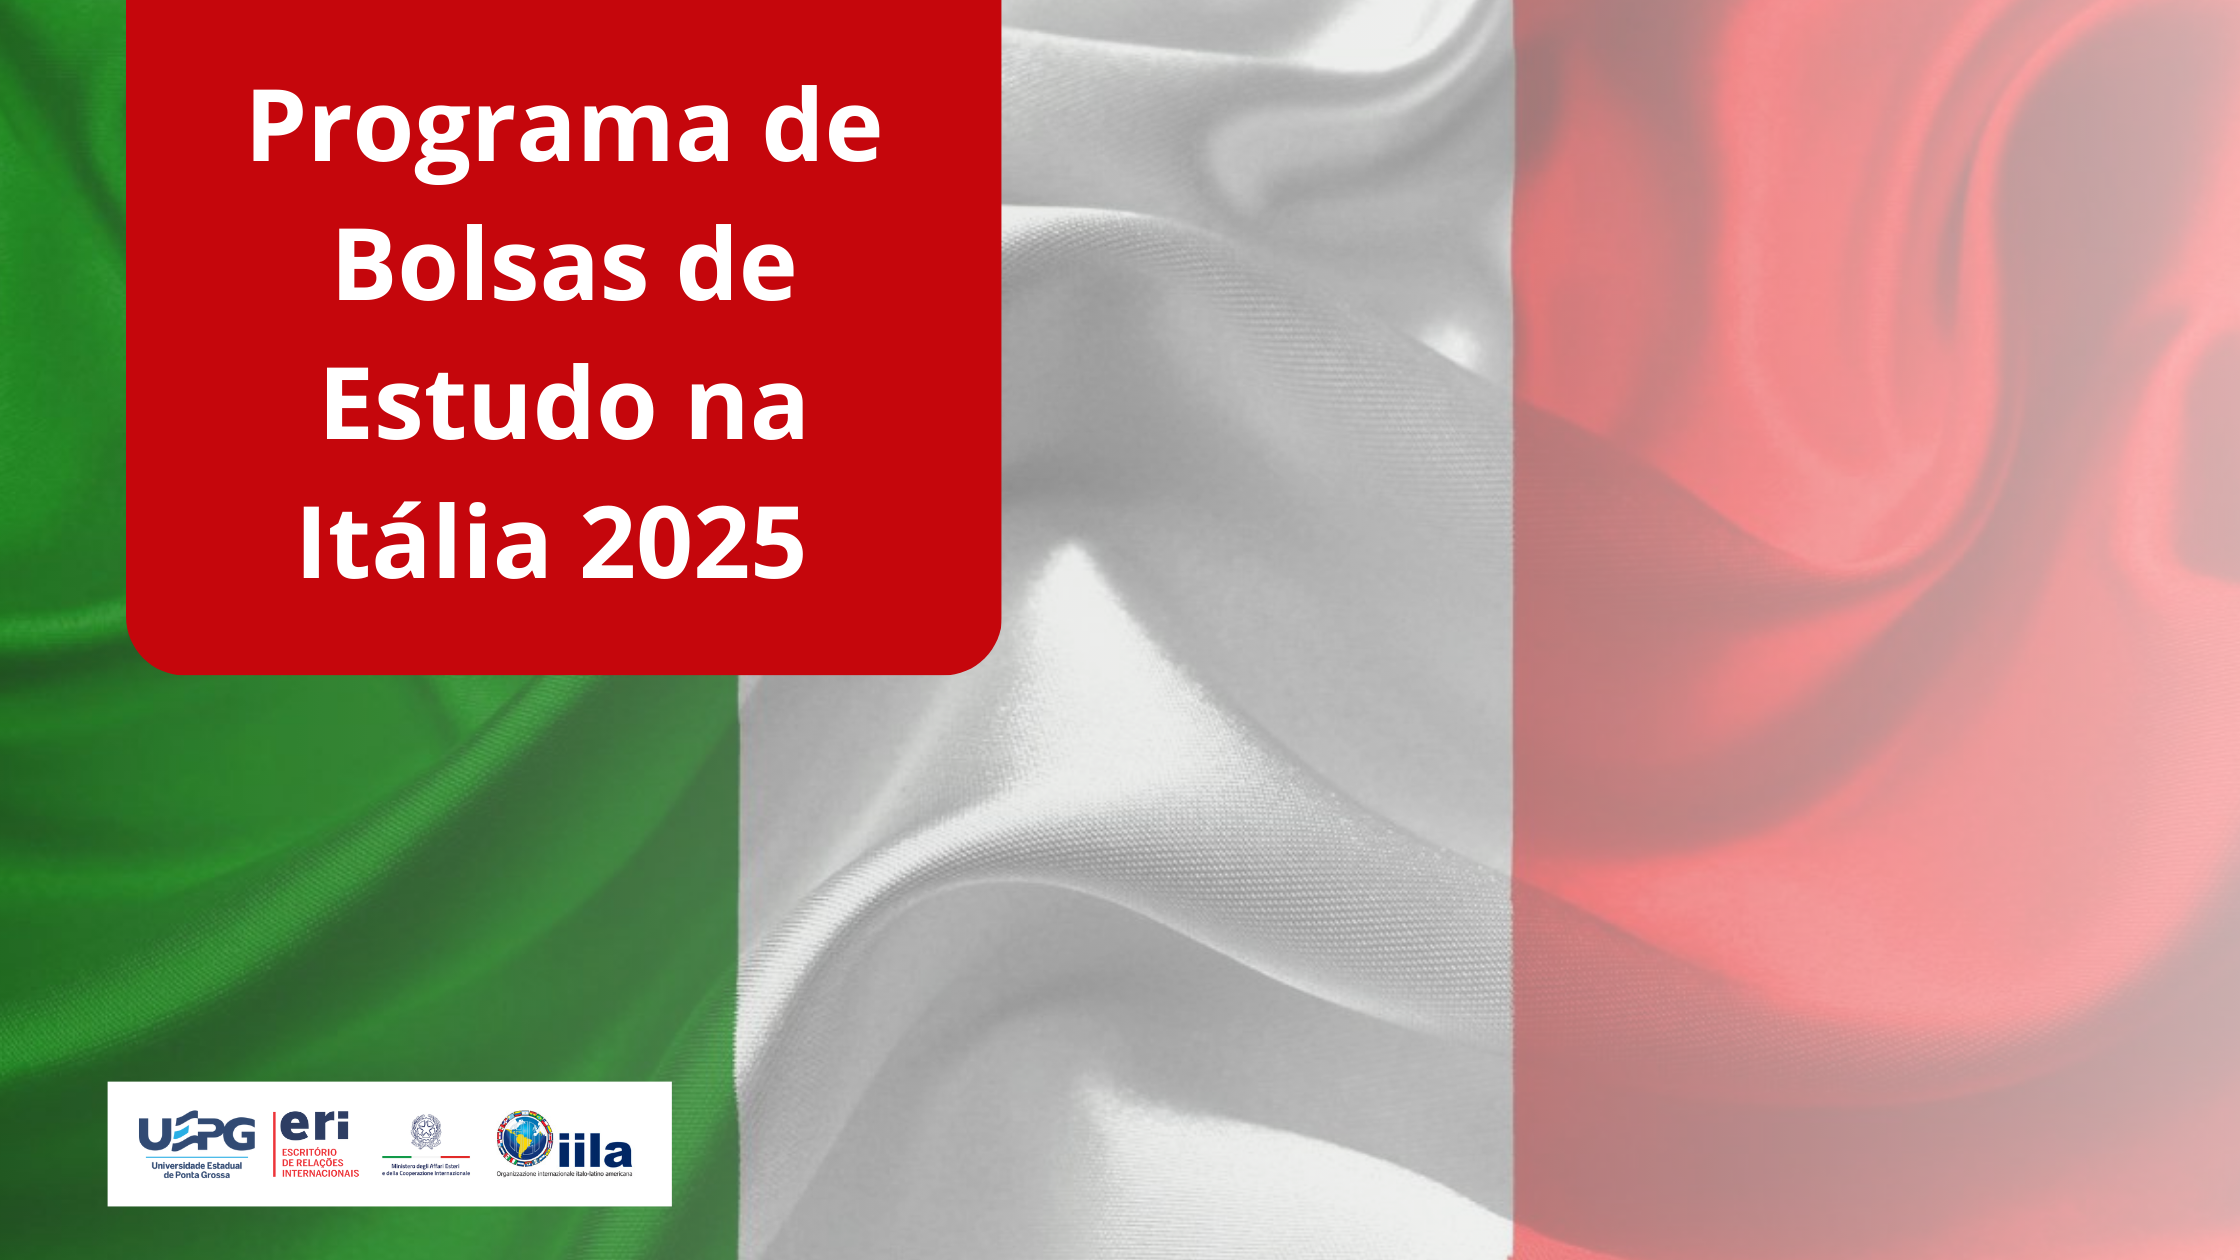 Programa de Bolsas de Estudo na Itália 2025